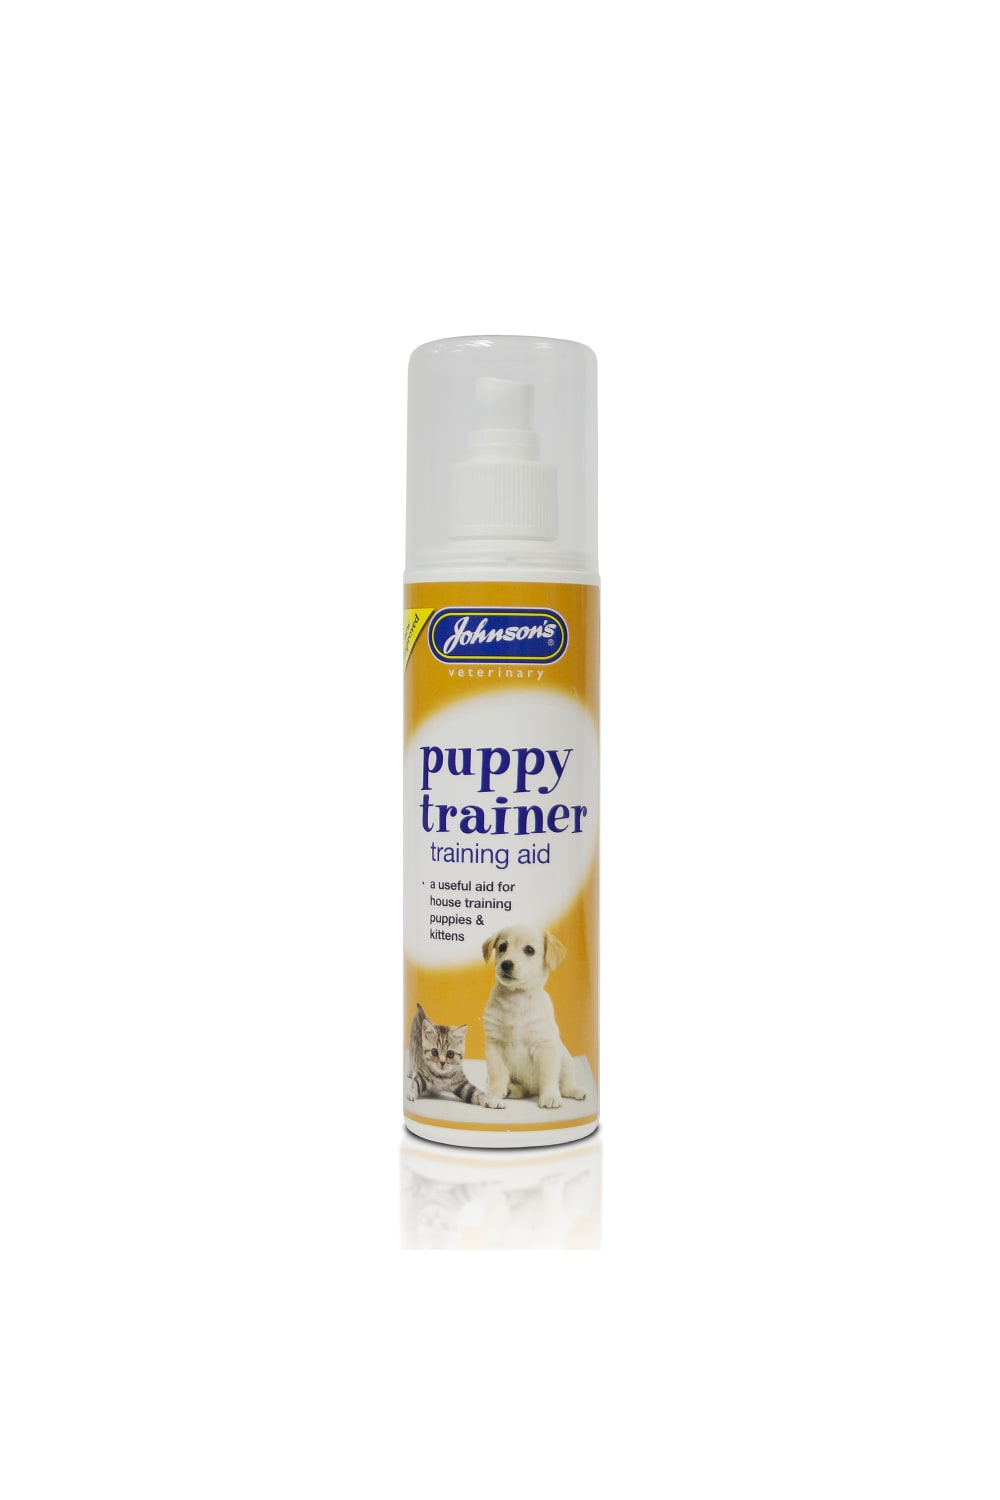 Johnsons Veterinary Puppy & Kitten Trainer Liquid (May Vary) (5 fl oz)